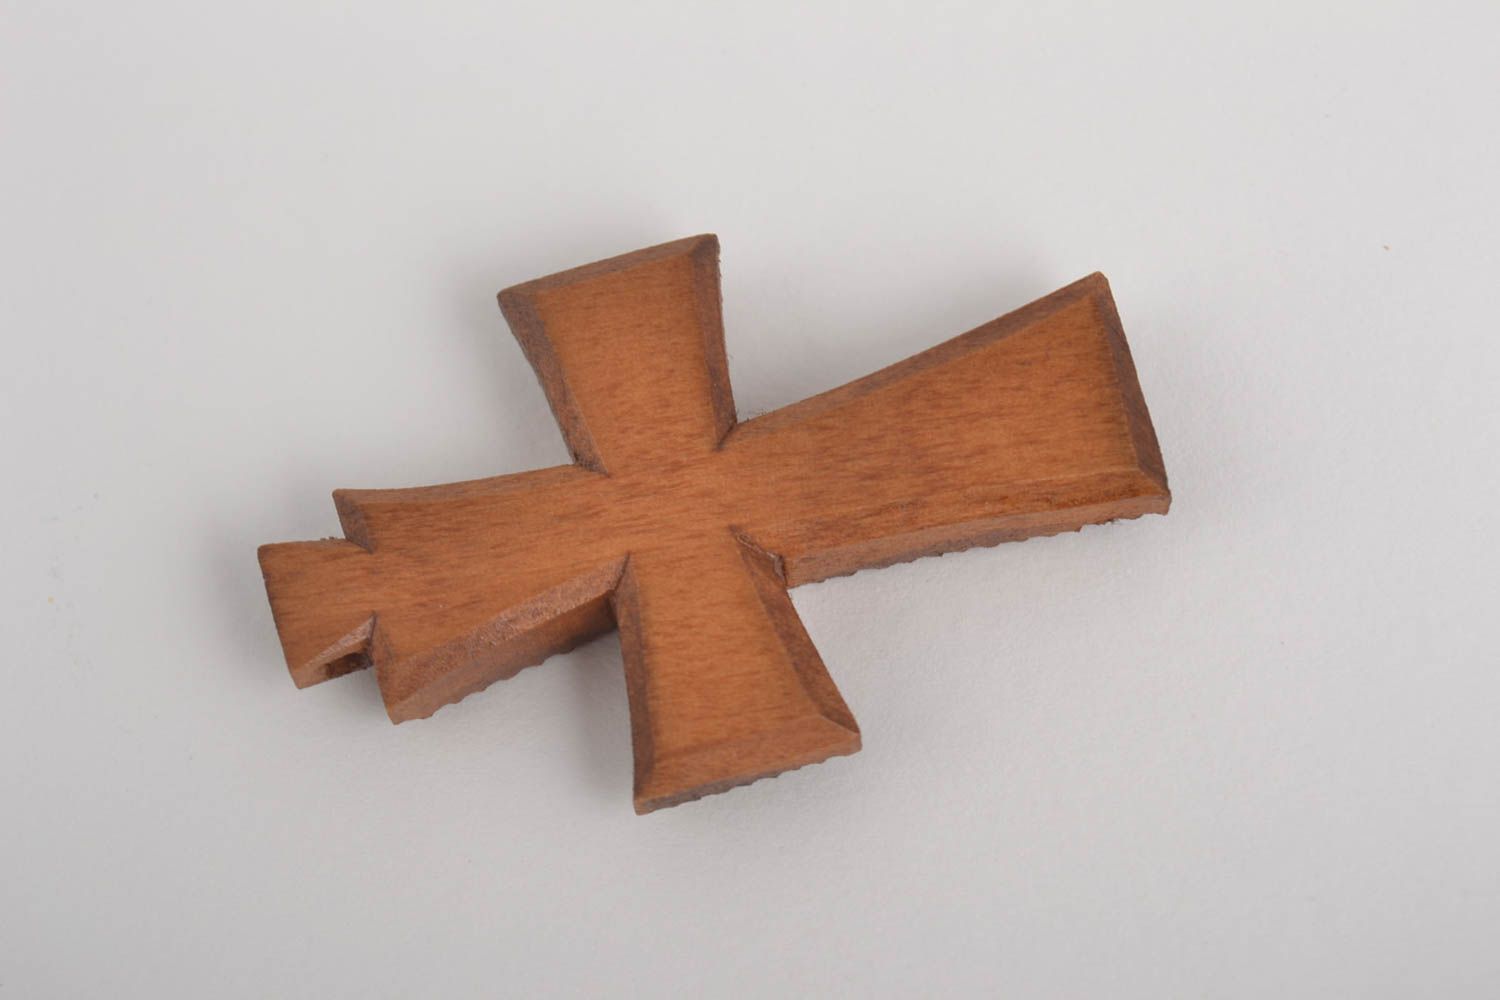 Крест ручной работы деревянный крестик нательный крестик покрытый лаком фото 2